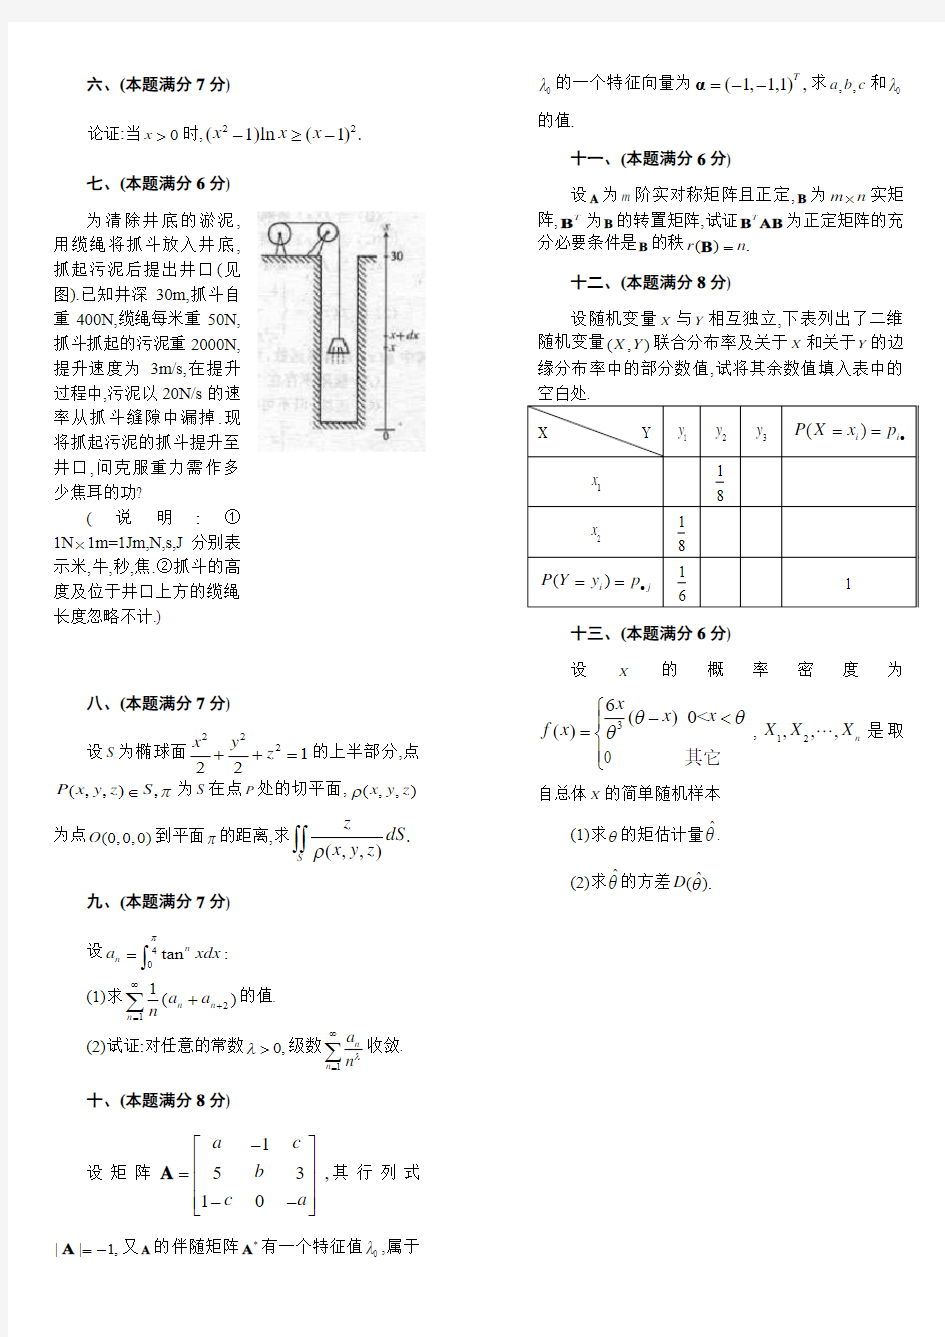 考研数学一历年真题(1999-2013)打印版